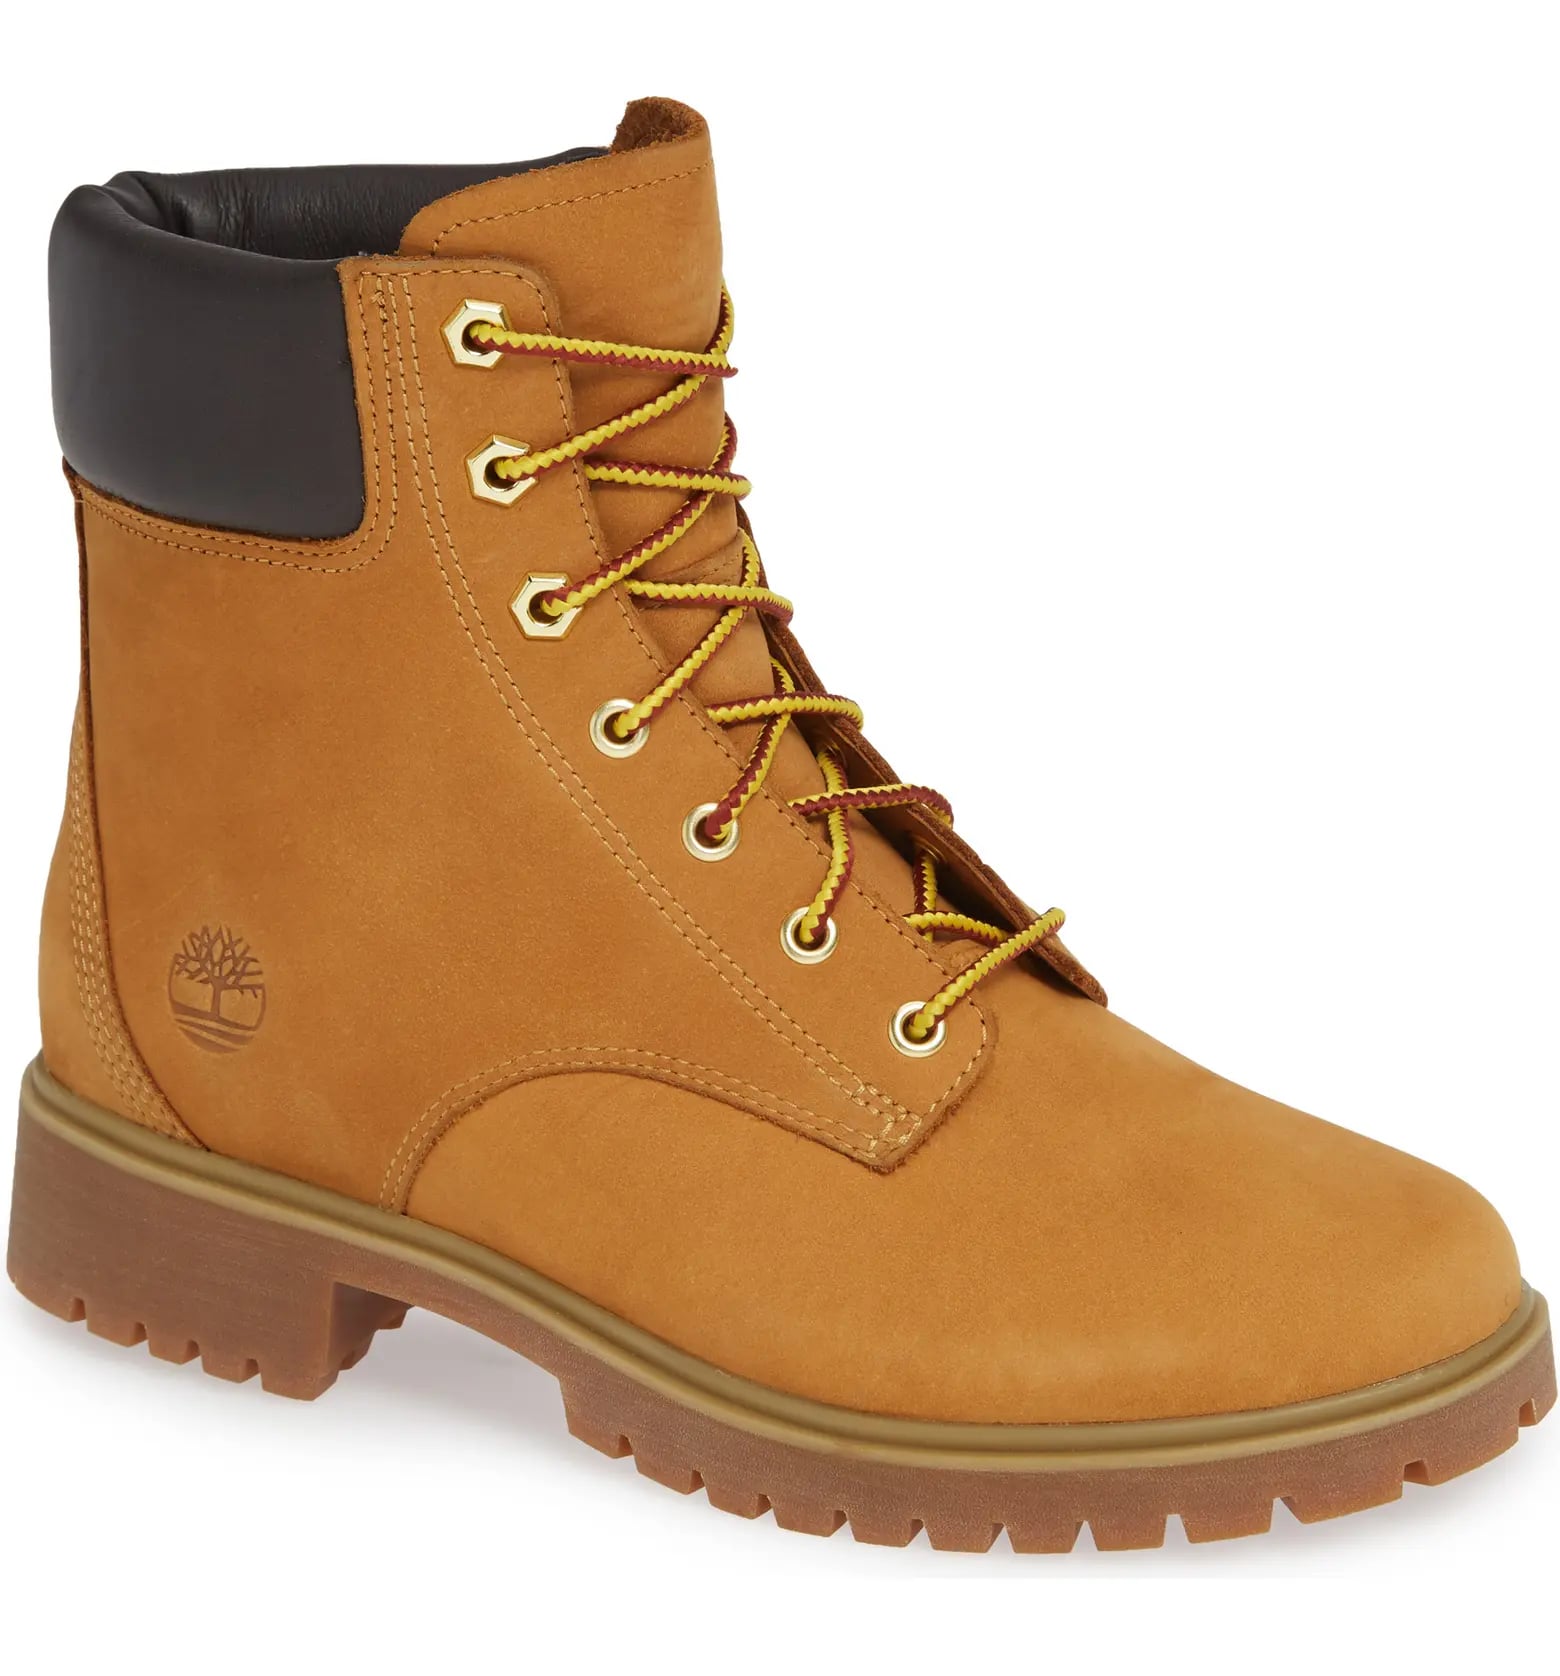 best trendy winter boots